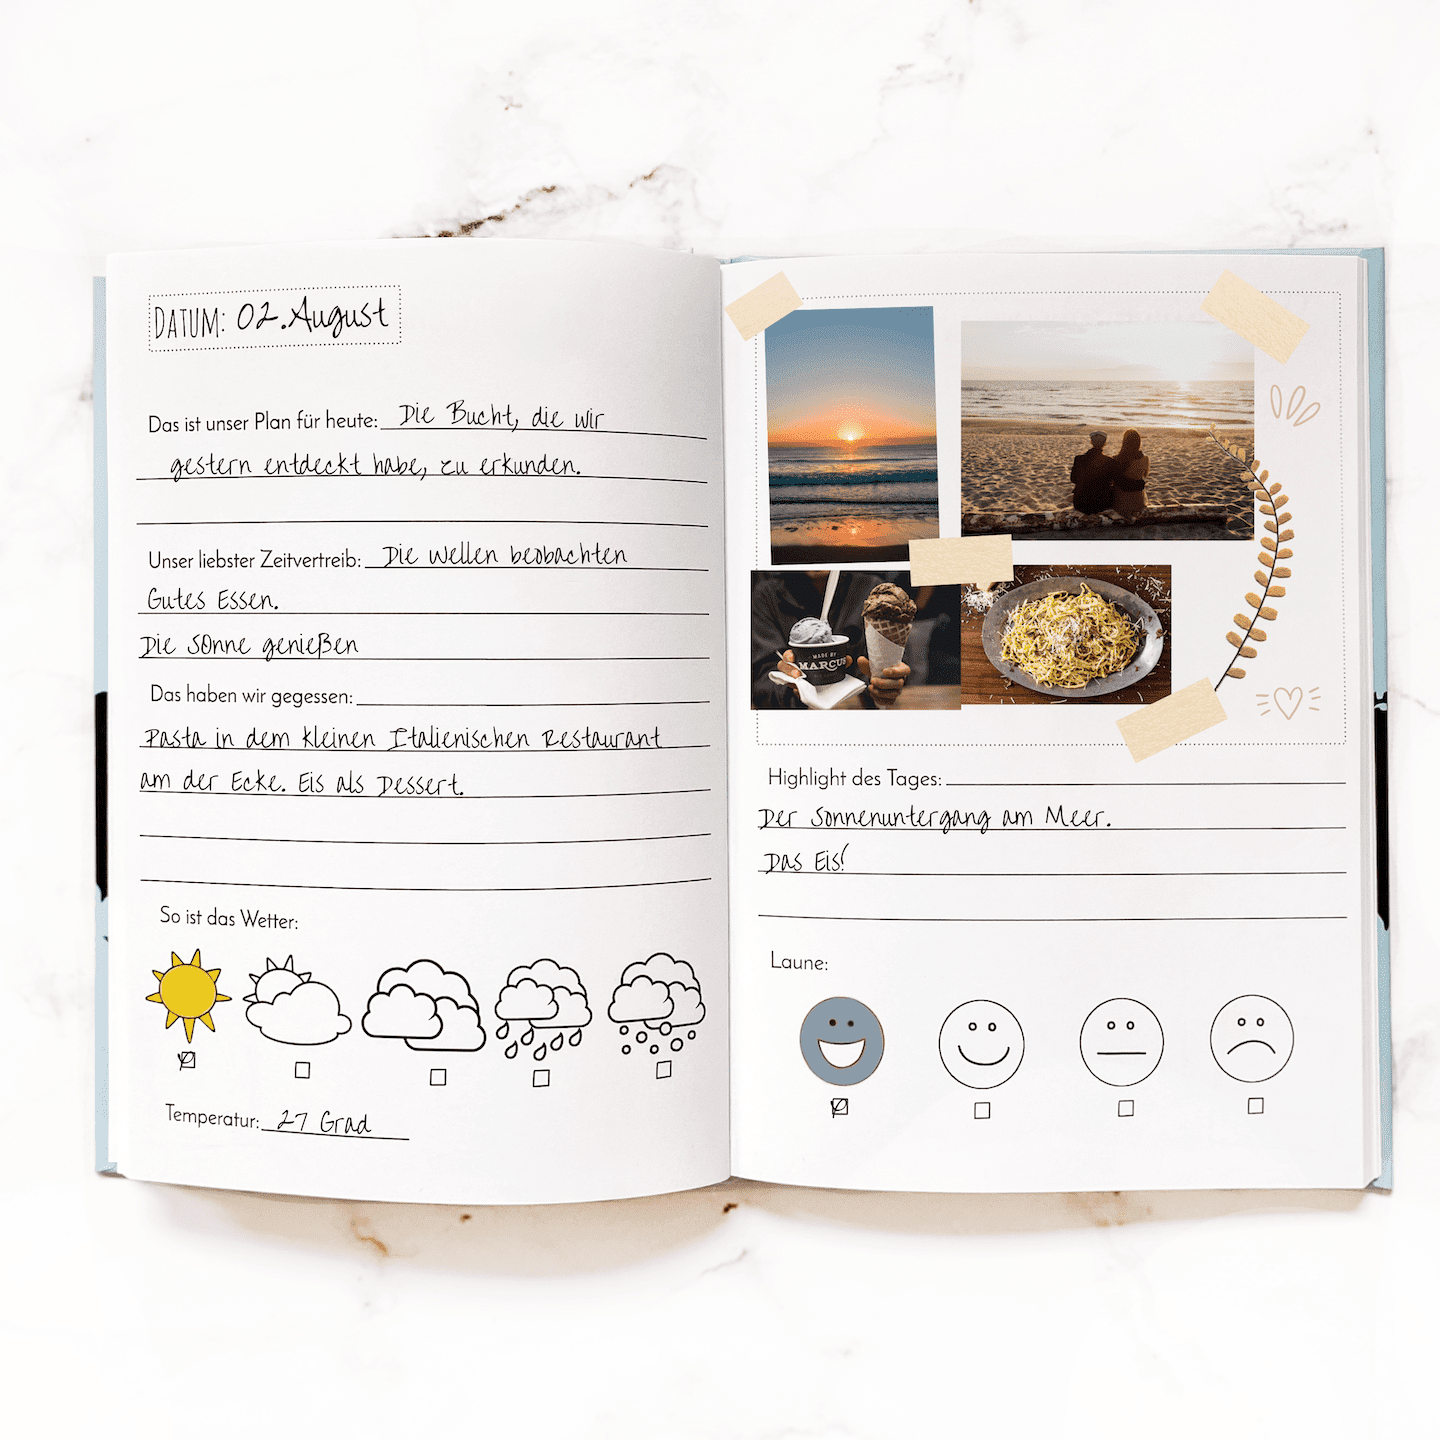 Reisetagebuch für Paare Ideen, Reisejournal selbst gestalten, Tagebuch Urlaub Inspiration, Reiseerinnerungen festhalten